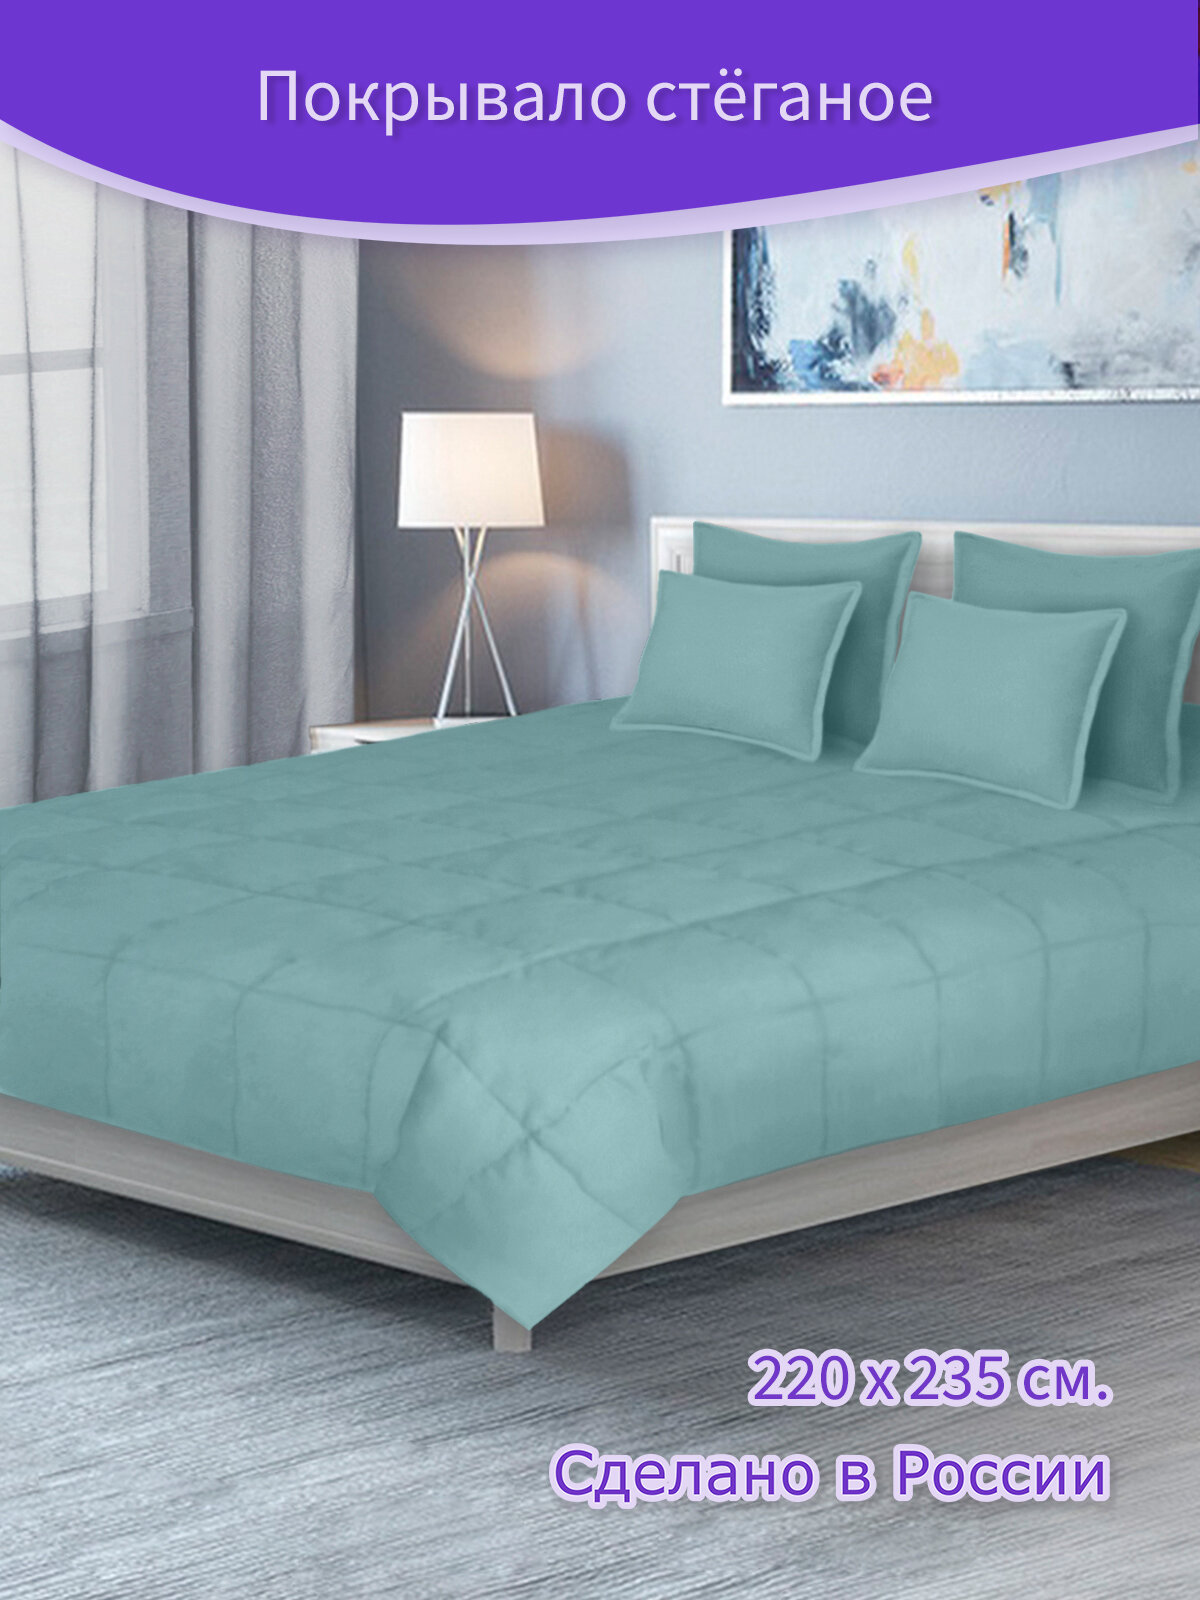 Покрывало плед стеганое Велюр - канвас Светло бирюзовый, голубой, 220 х 235 см. на кровать, диван с подкладкой синтепон - фотография № 1